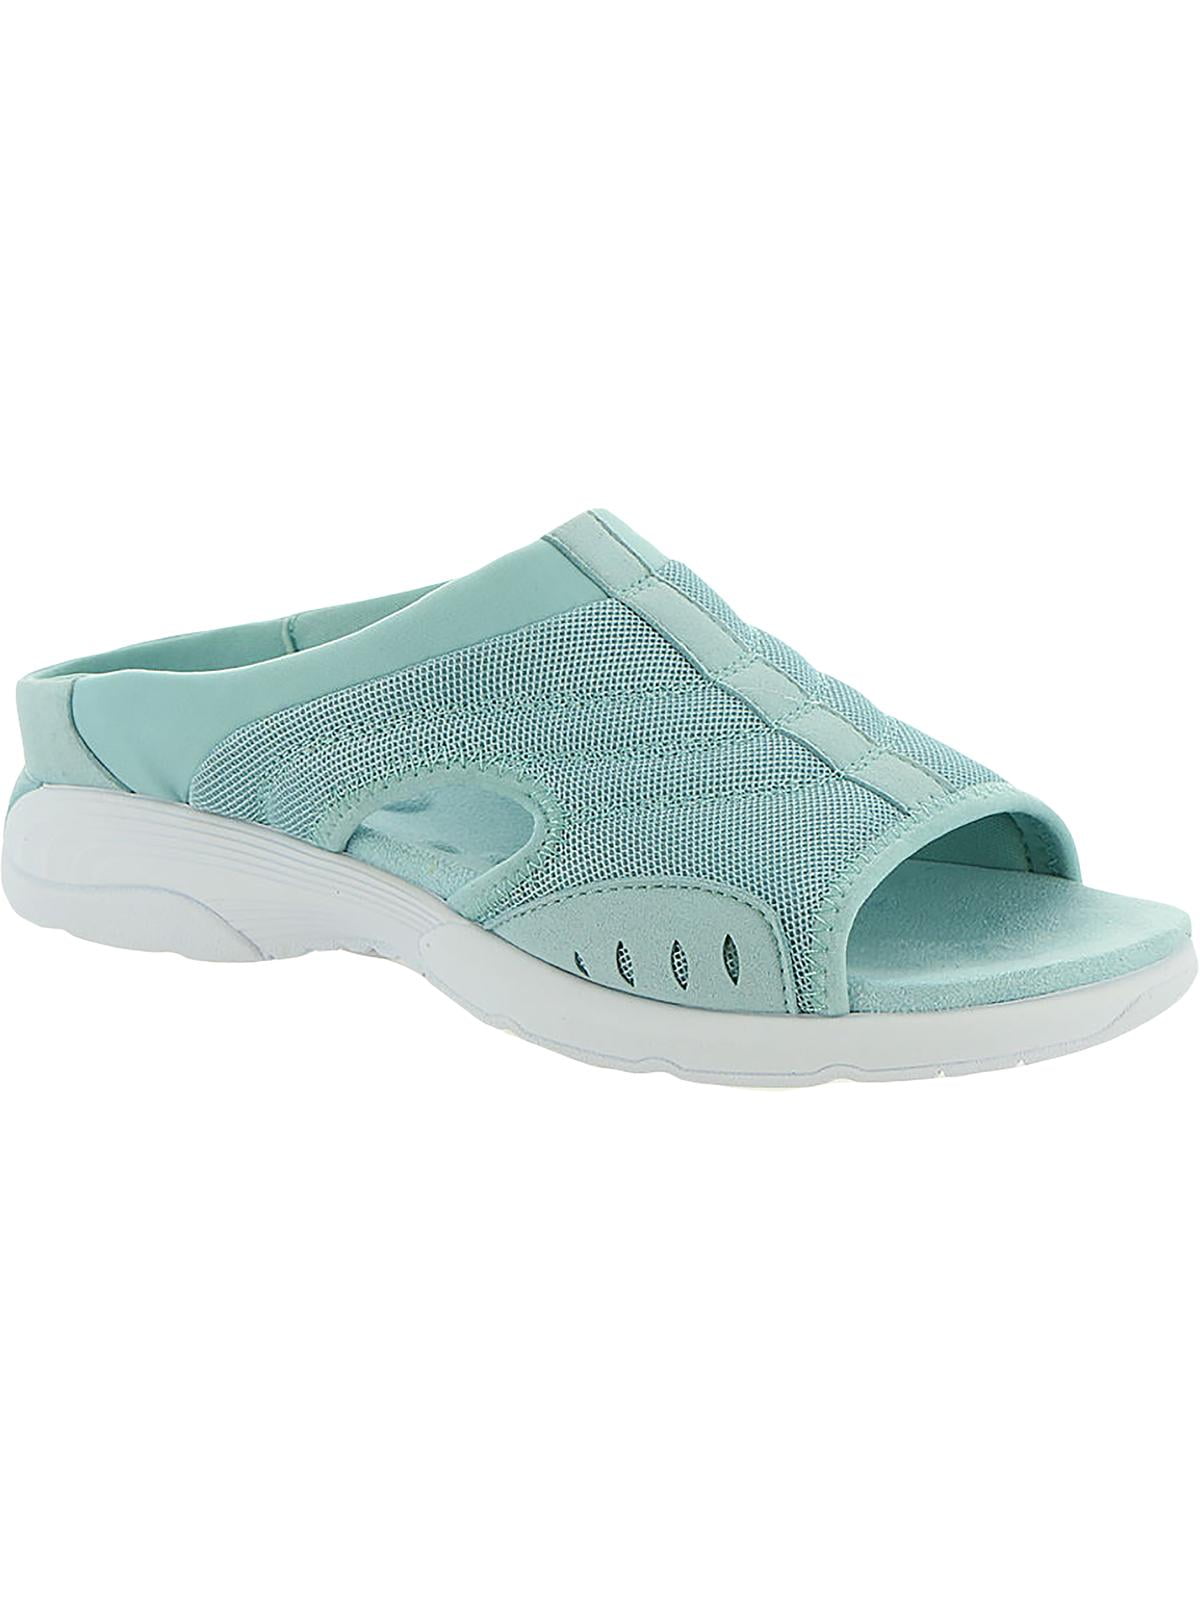 Easy Spirit Womens Traciee 2 Open Toe Comfort Slide Sandals - Walmart.com